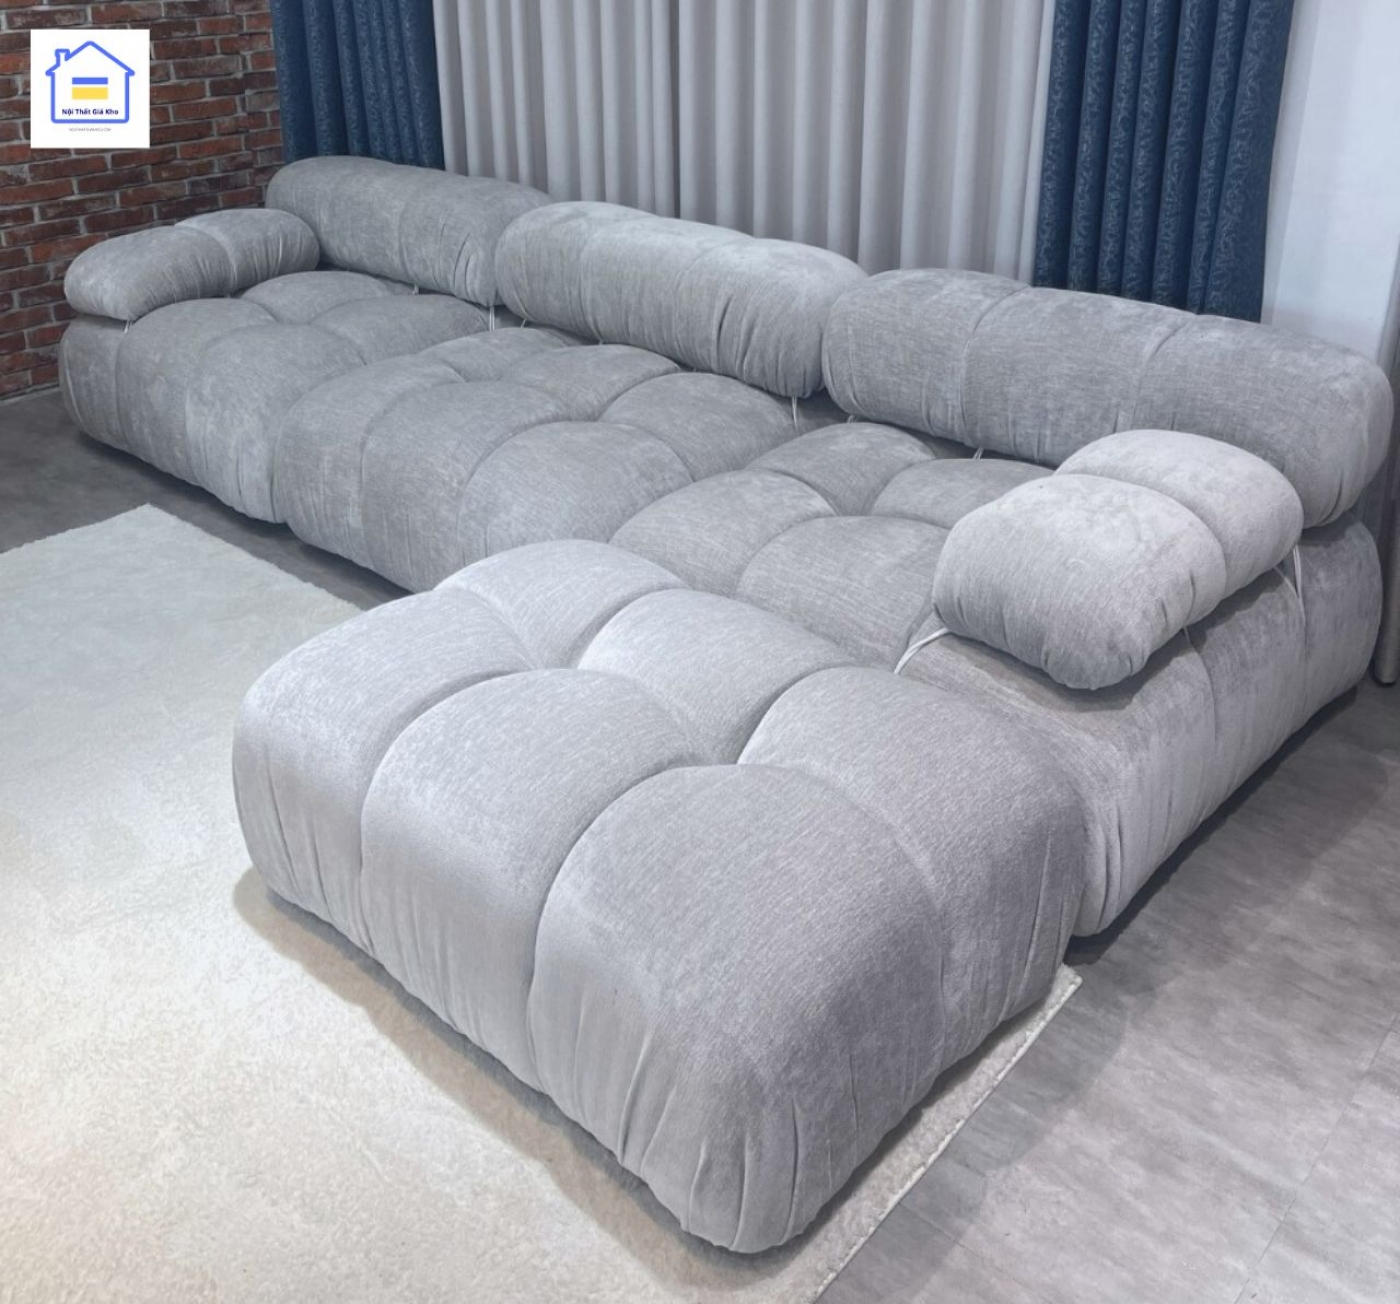 Sofa băng vải phong cách Hàn Quốc